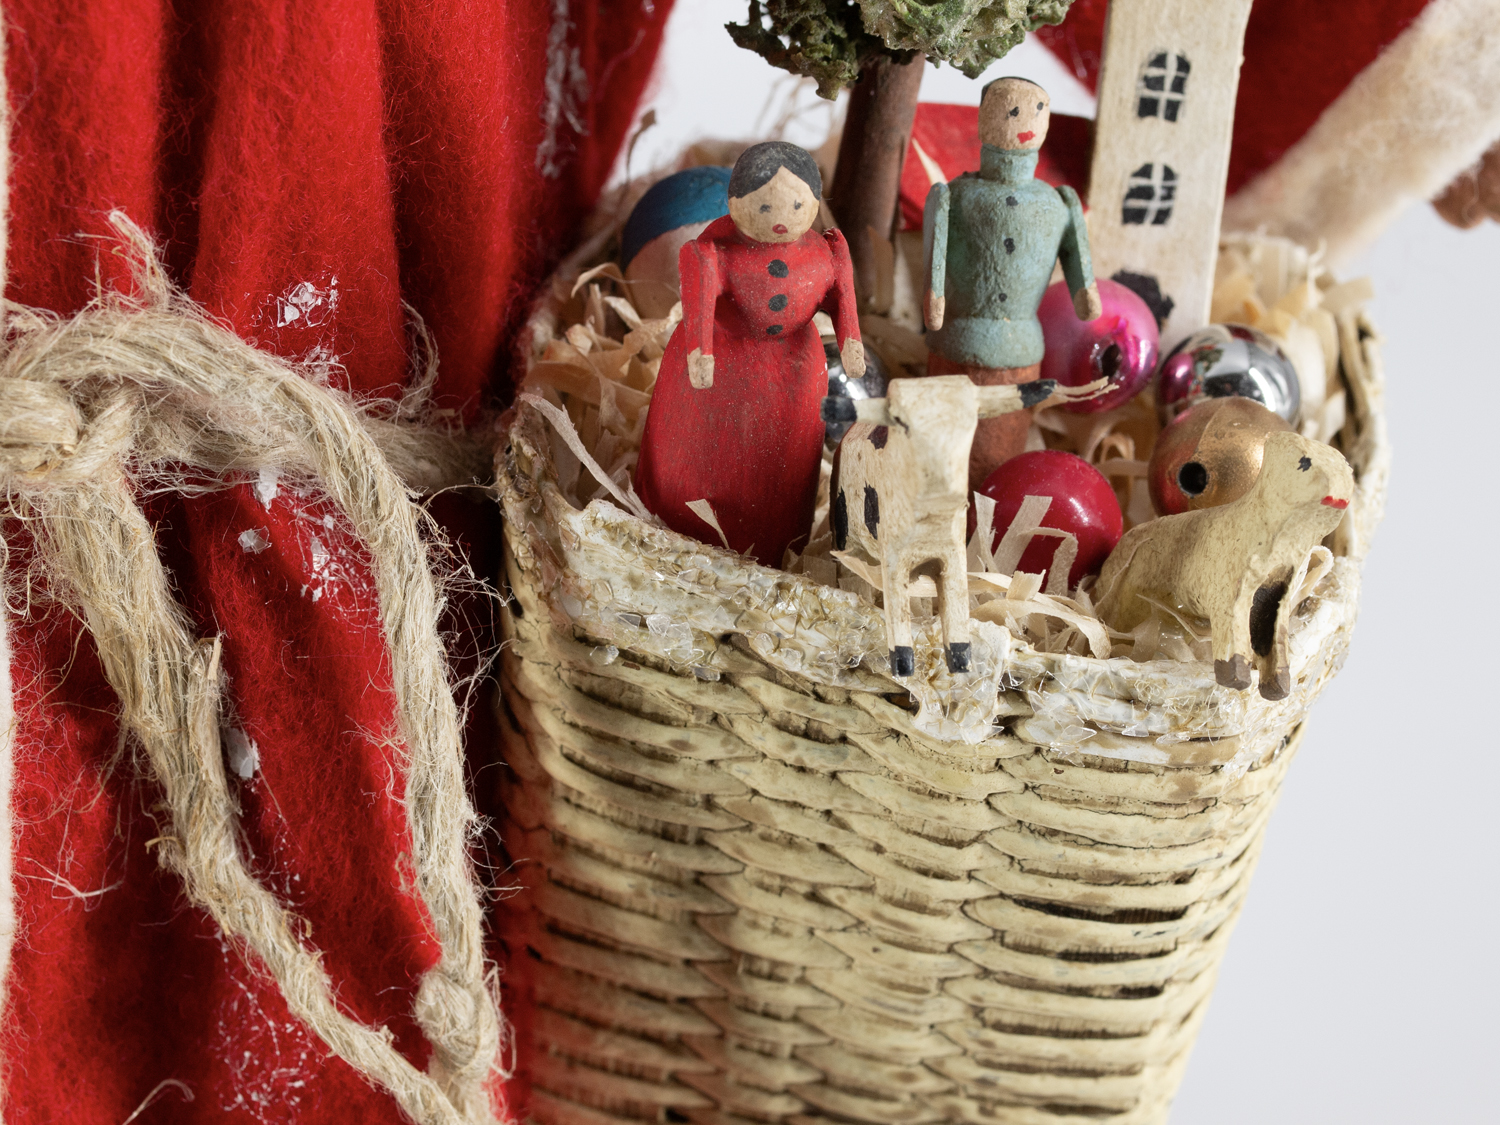 Weihnachtsmann mit rotem Filzmantel, Korb und Spielzeug, H=40cm, mit Füllfunktion